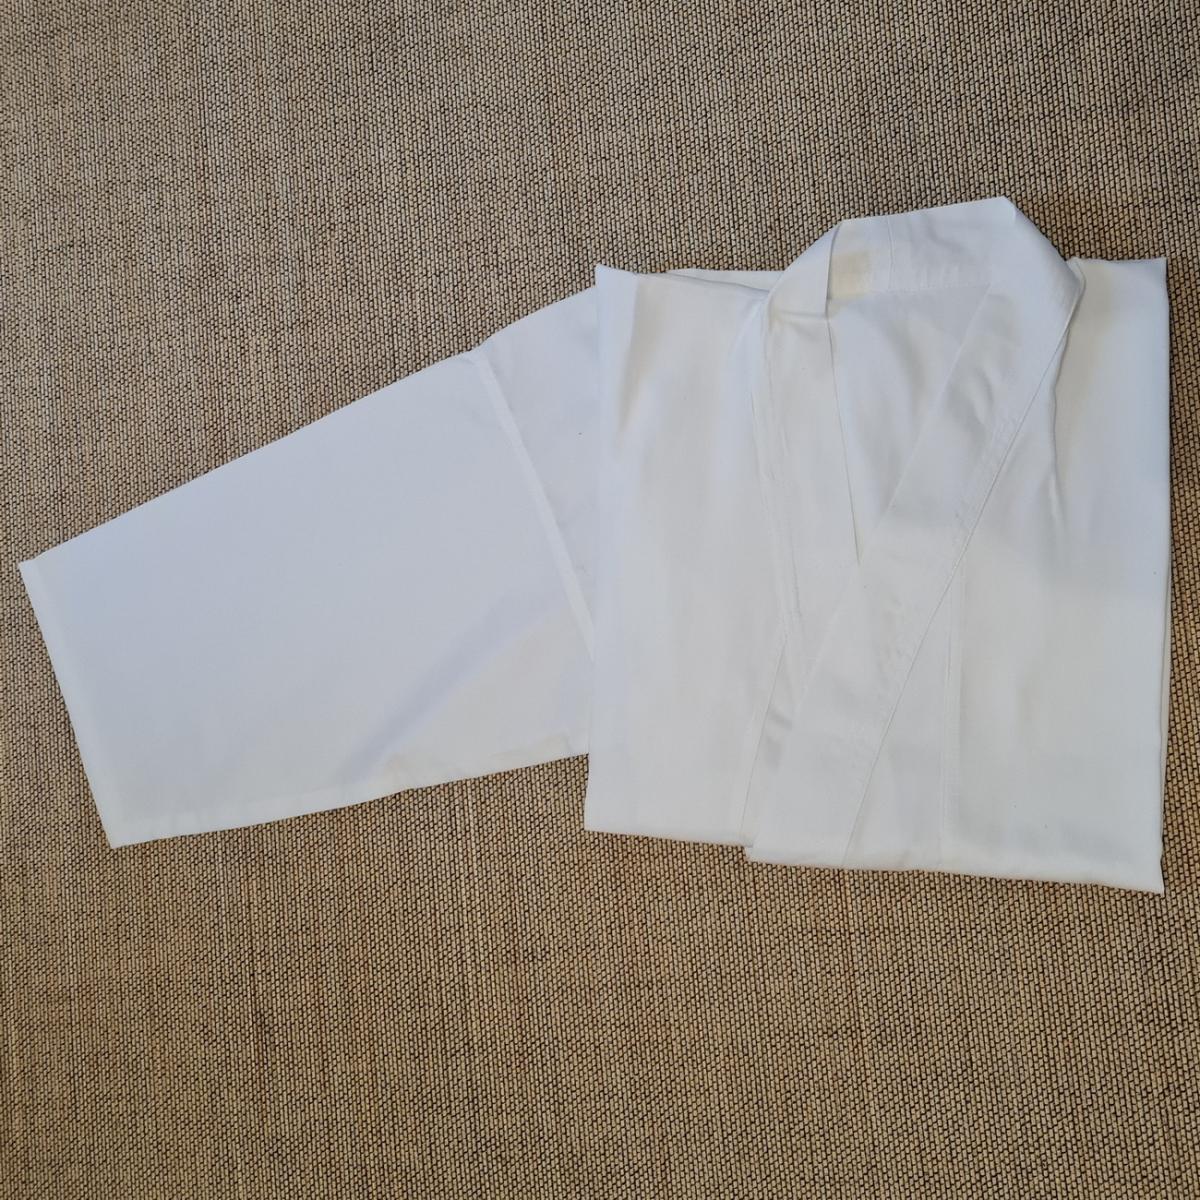 Gi aus Baumwolle - Stofffarbe weiß - Größe 170 cm ➤ www.bokken-shop.de. Gi passend für Iaido, Aikdo, Kendo, Jodo. Dein Budo-Fachhändler!